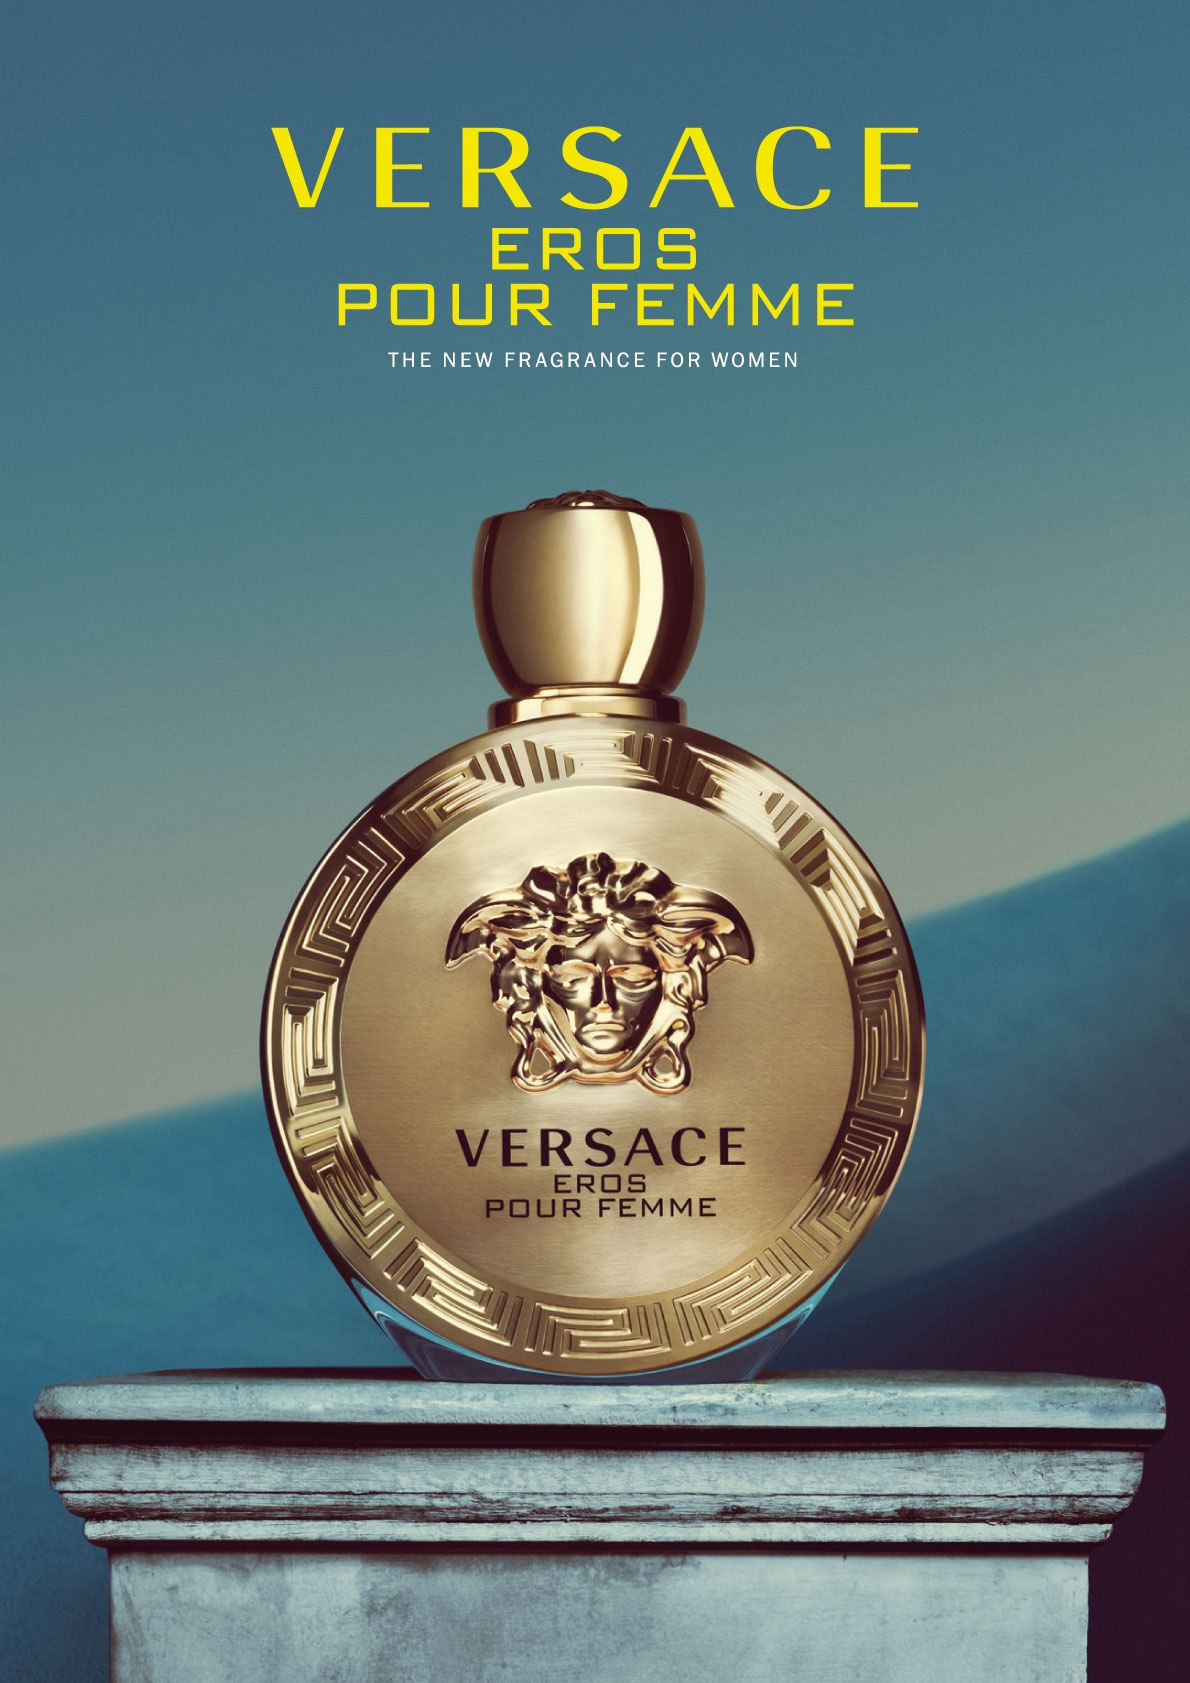 Versace Eros Pour Femme Perfumes, Colognes, Parfums, Scents resource